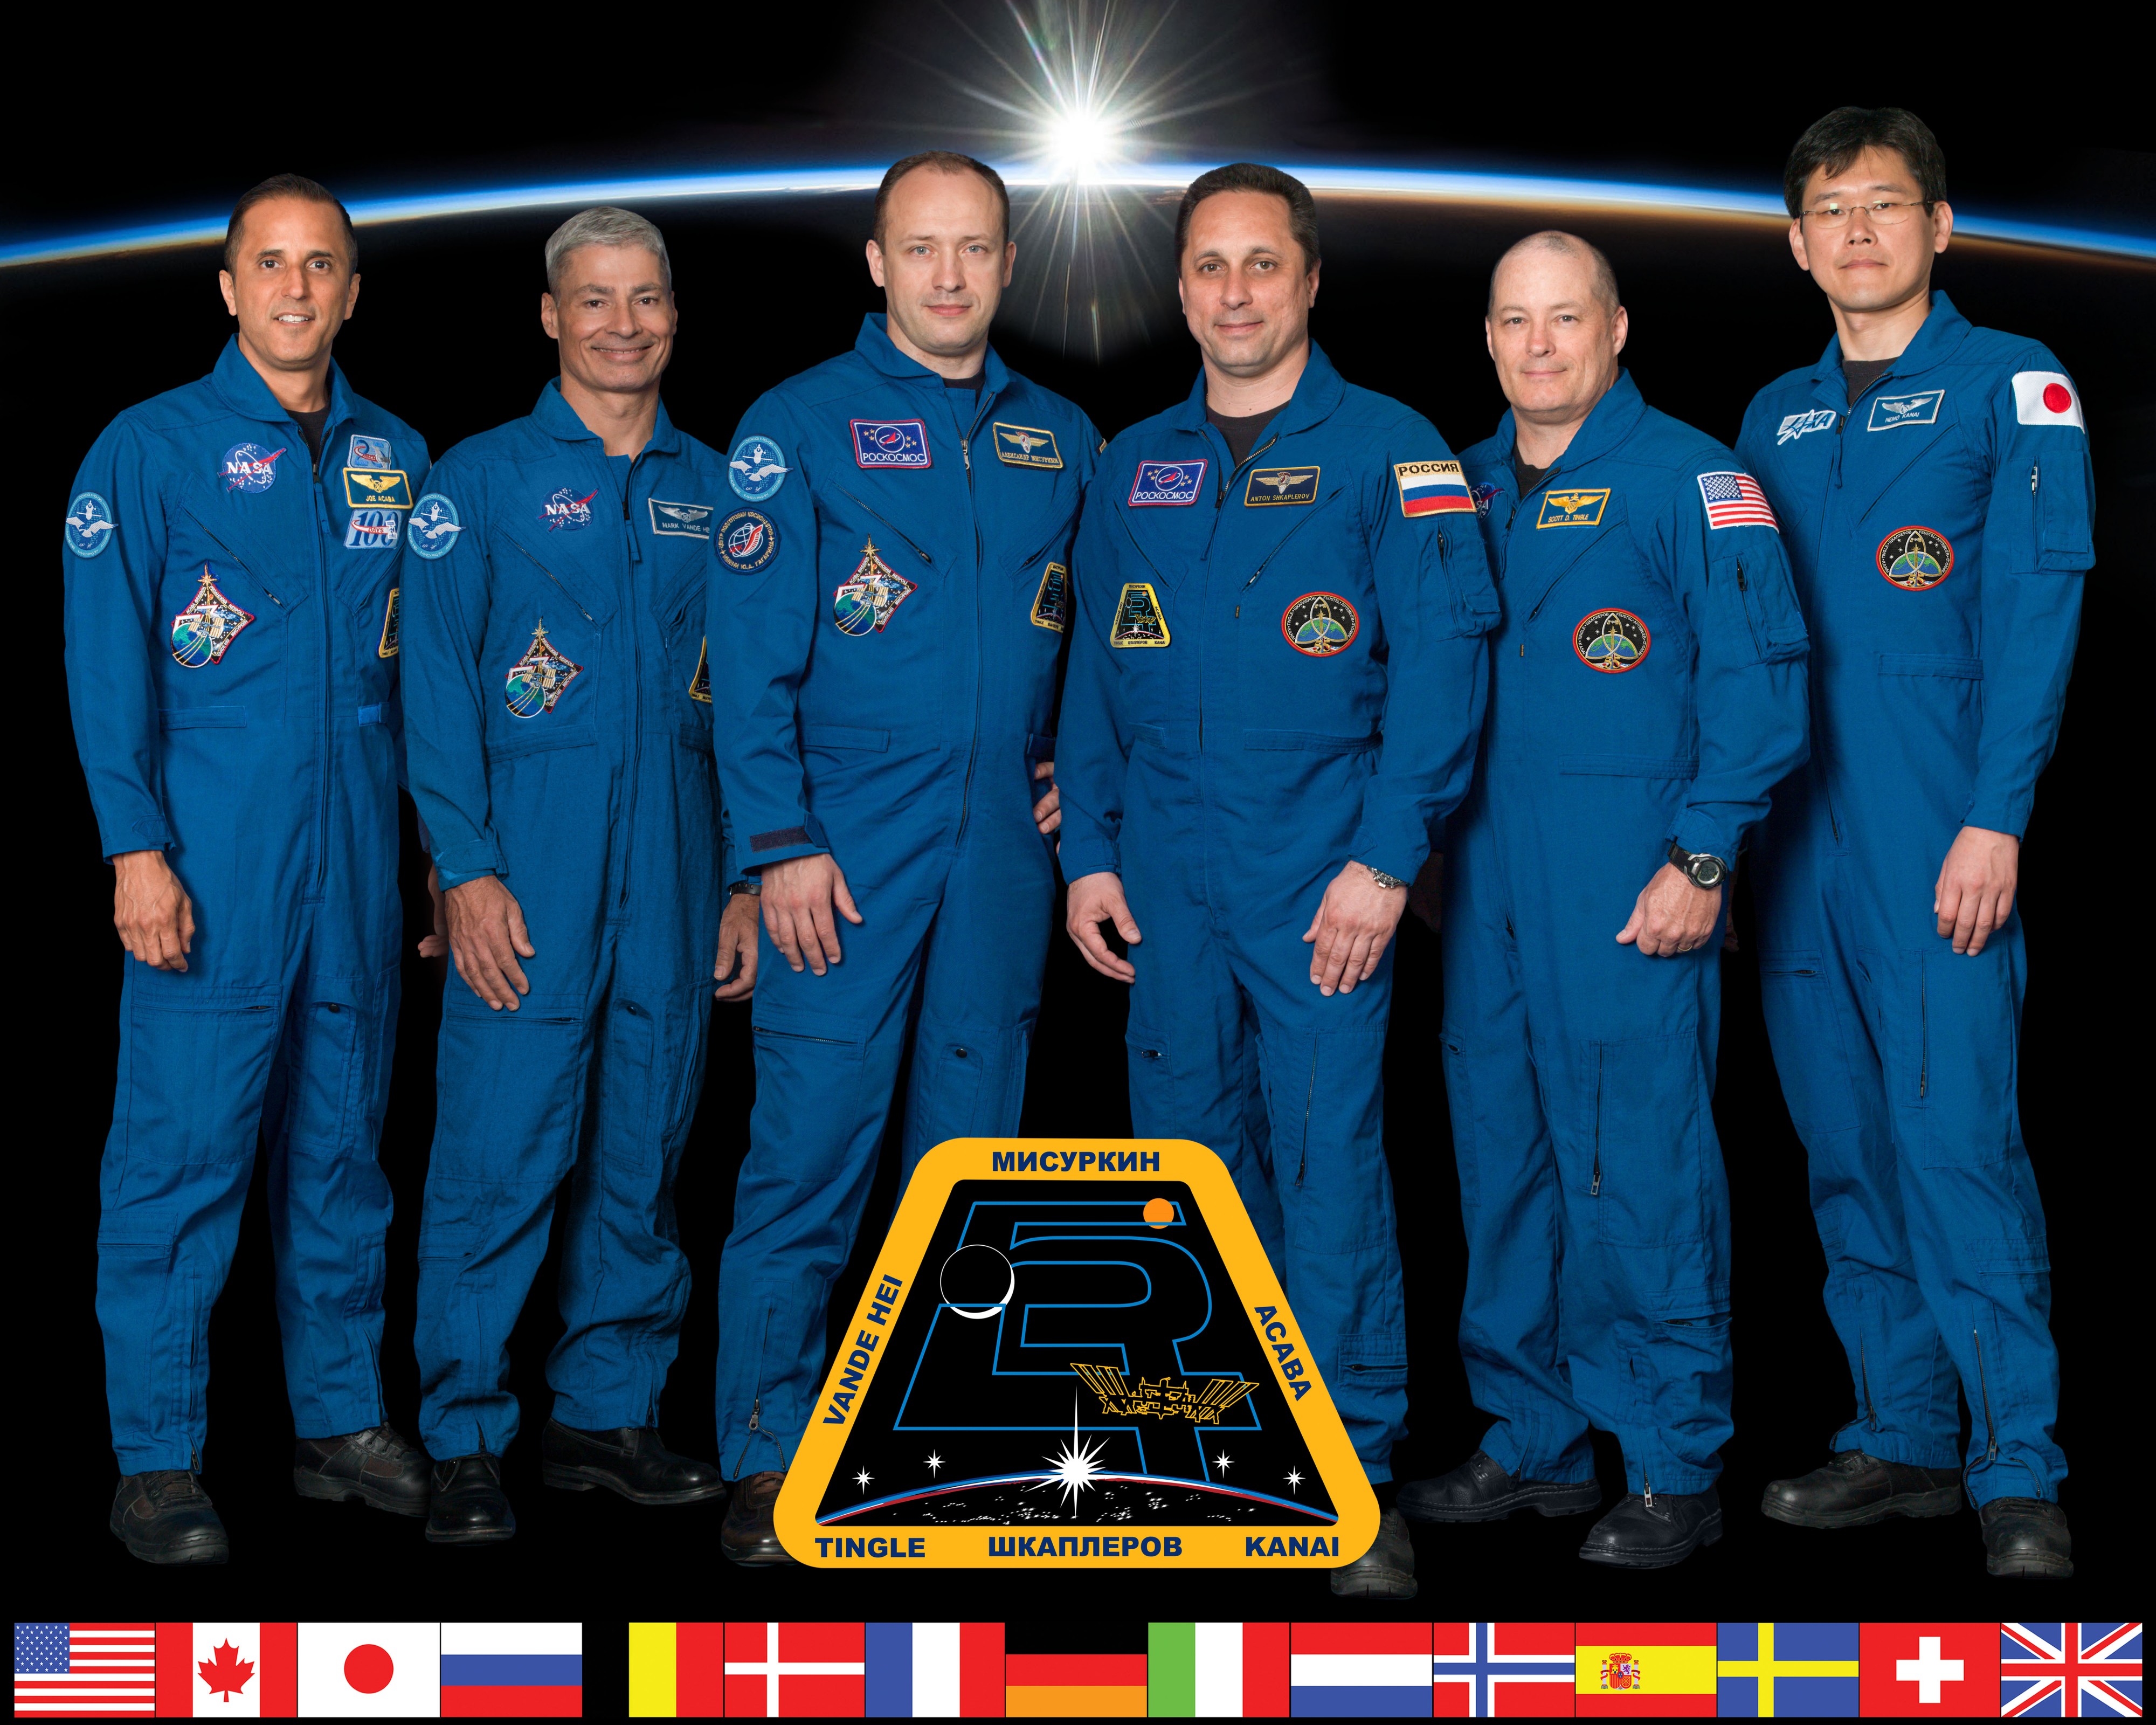 Expedition 54 crew portrait